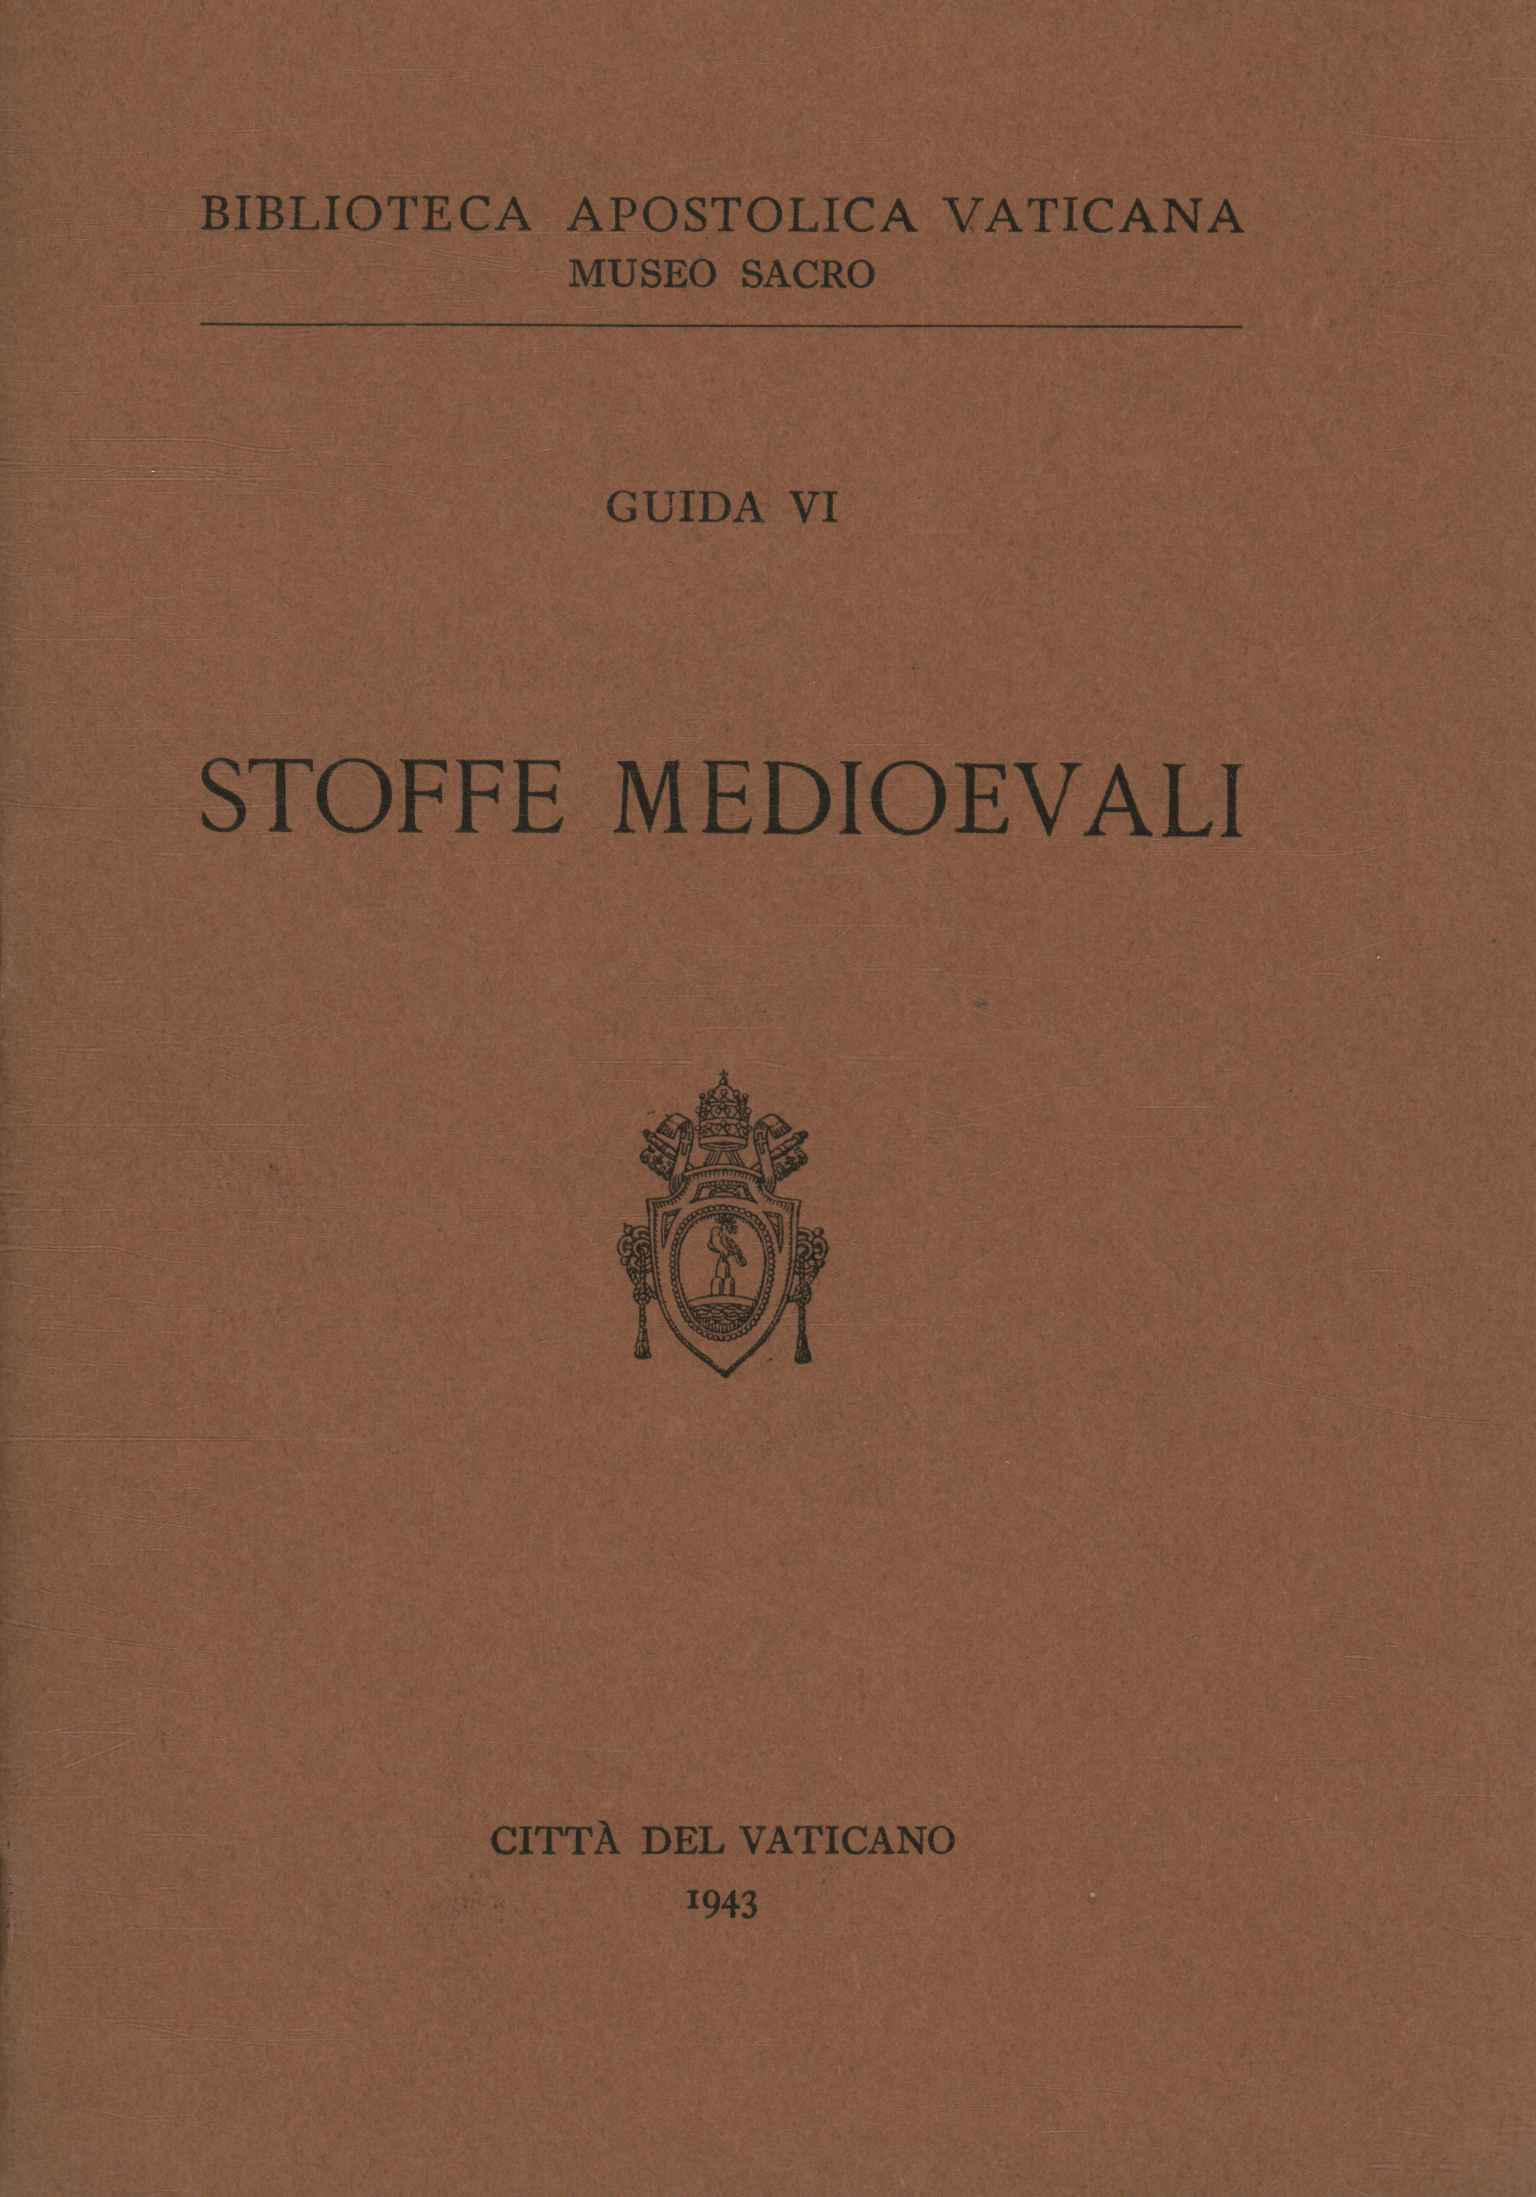 Tissus médiévaux (Guide VI)